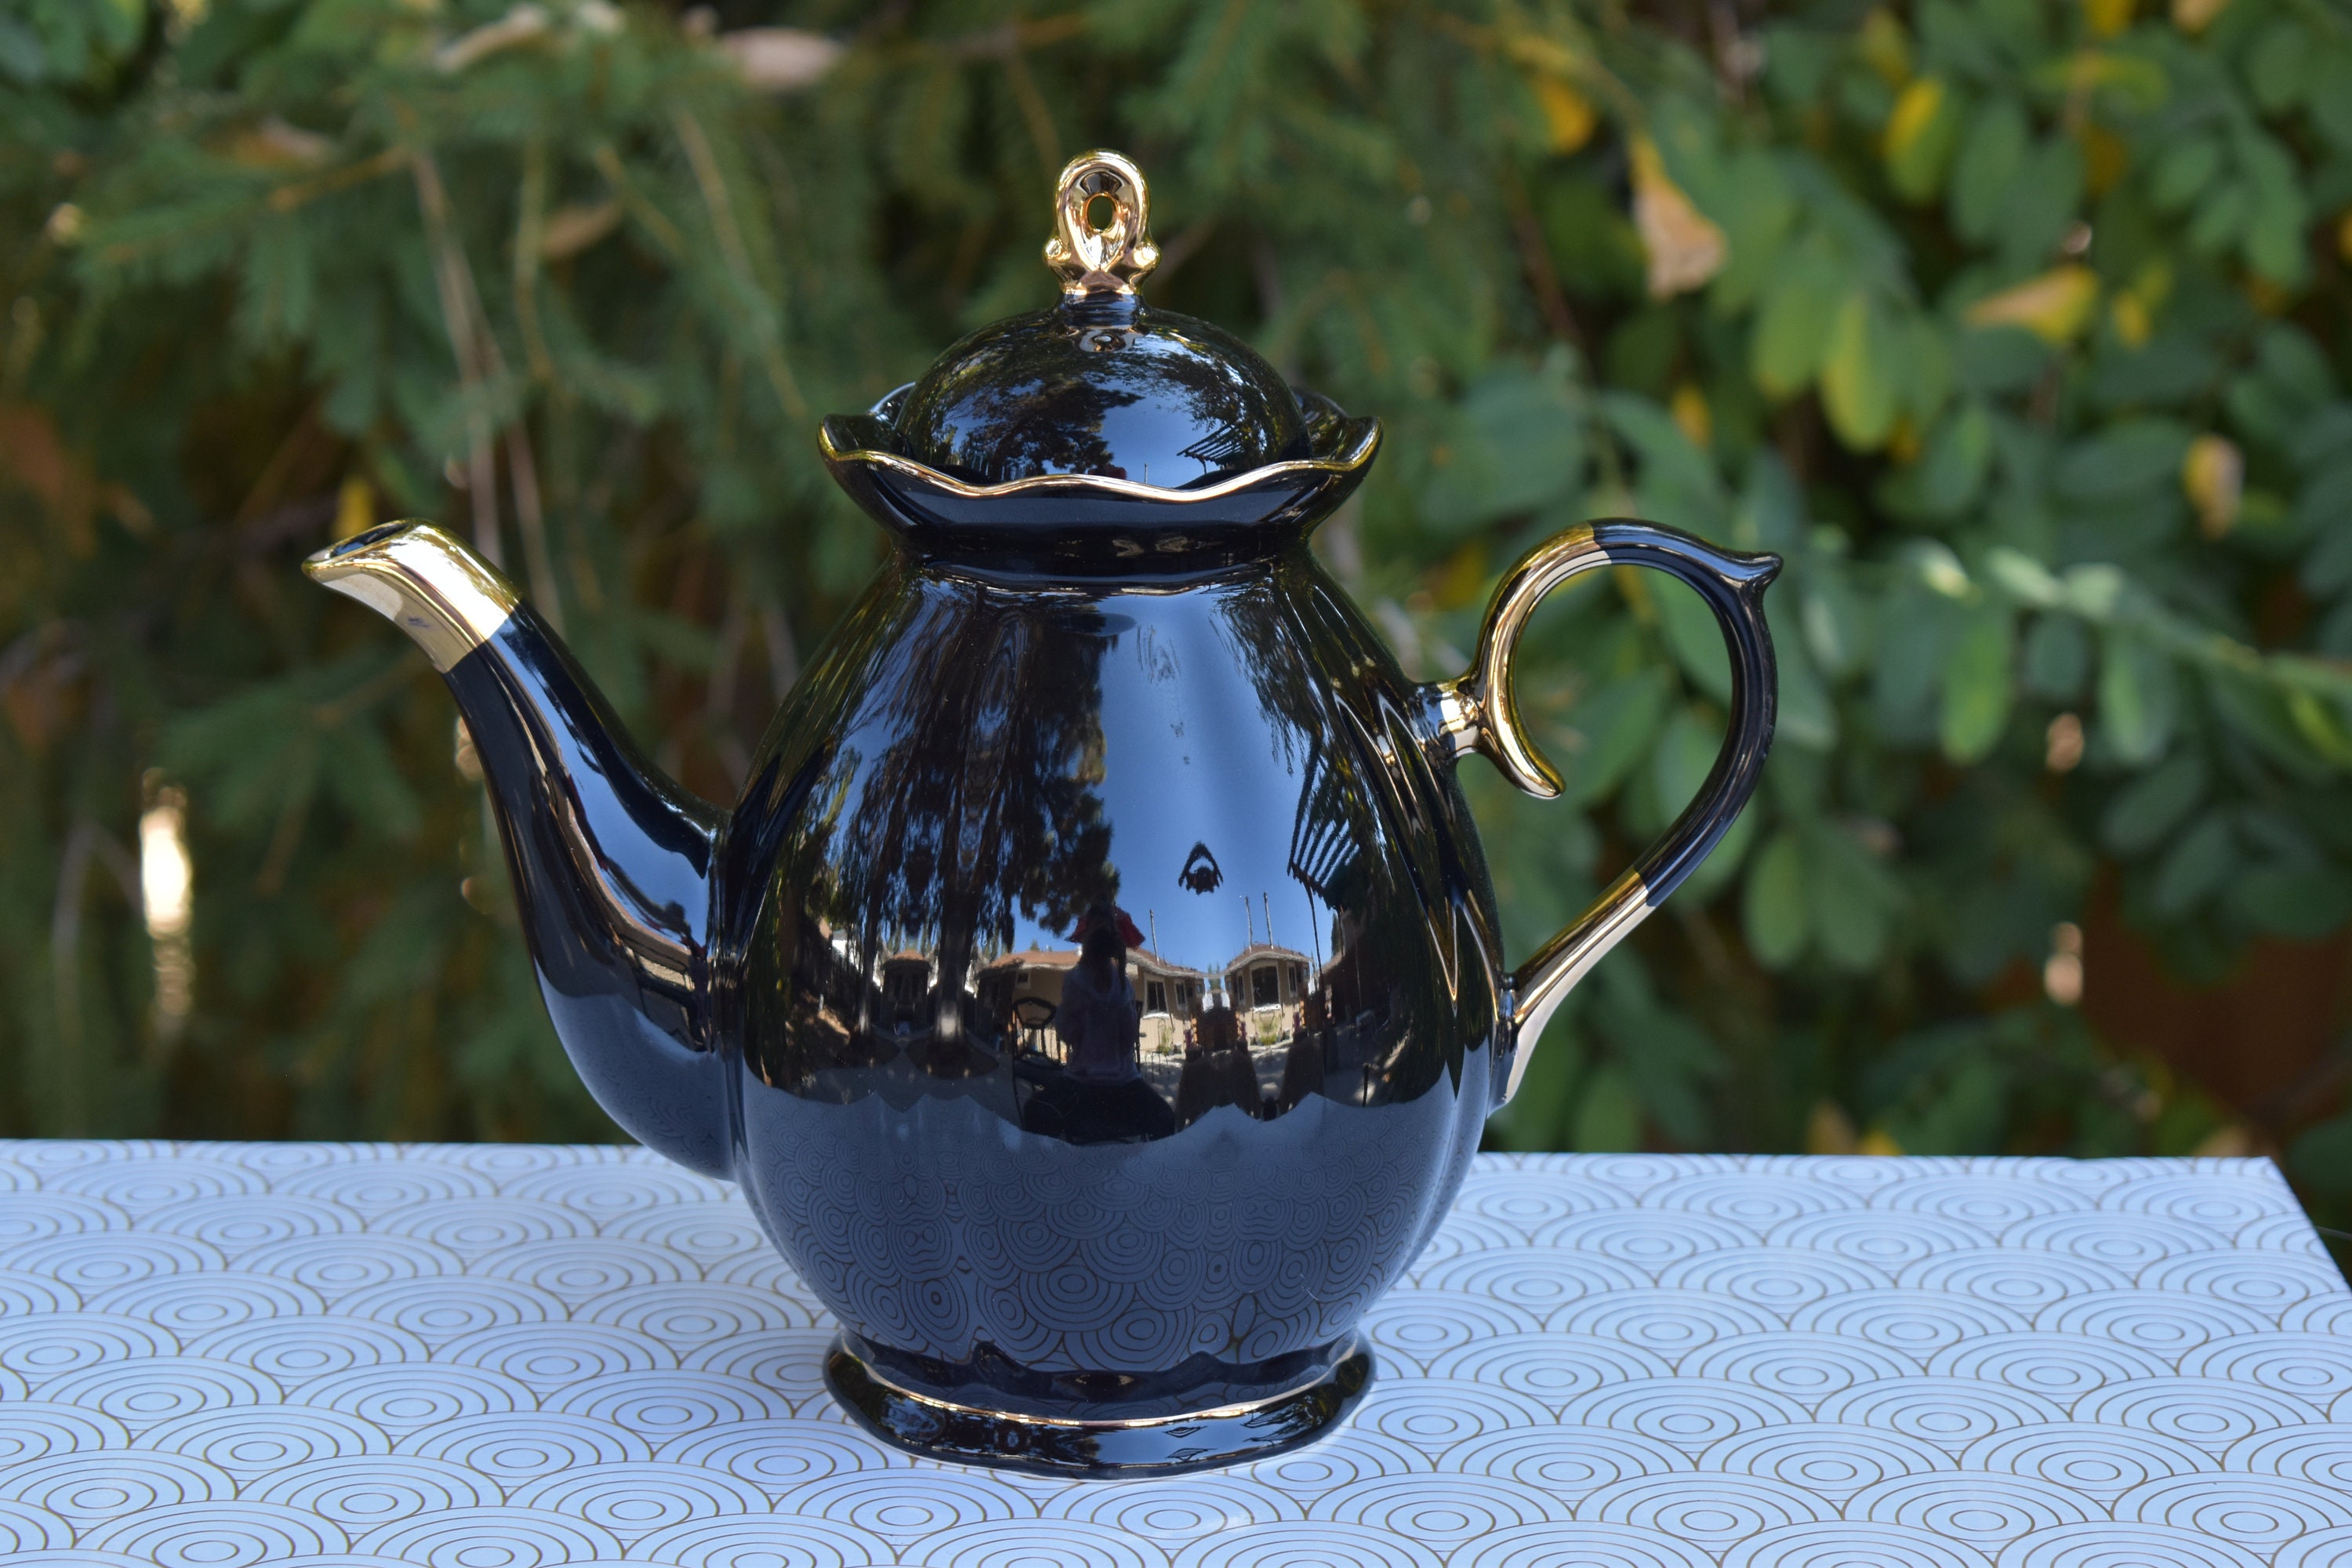 Harry Potter 2-Piece Hogwarts Castle Tea For One Teapot Set